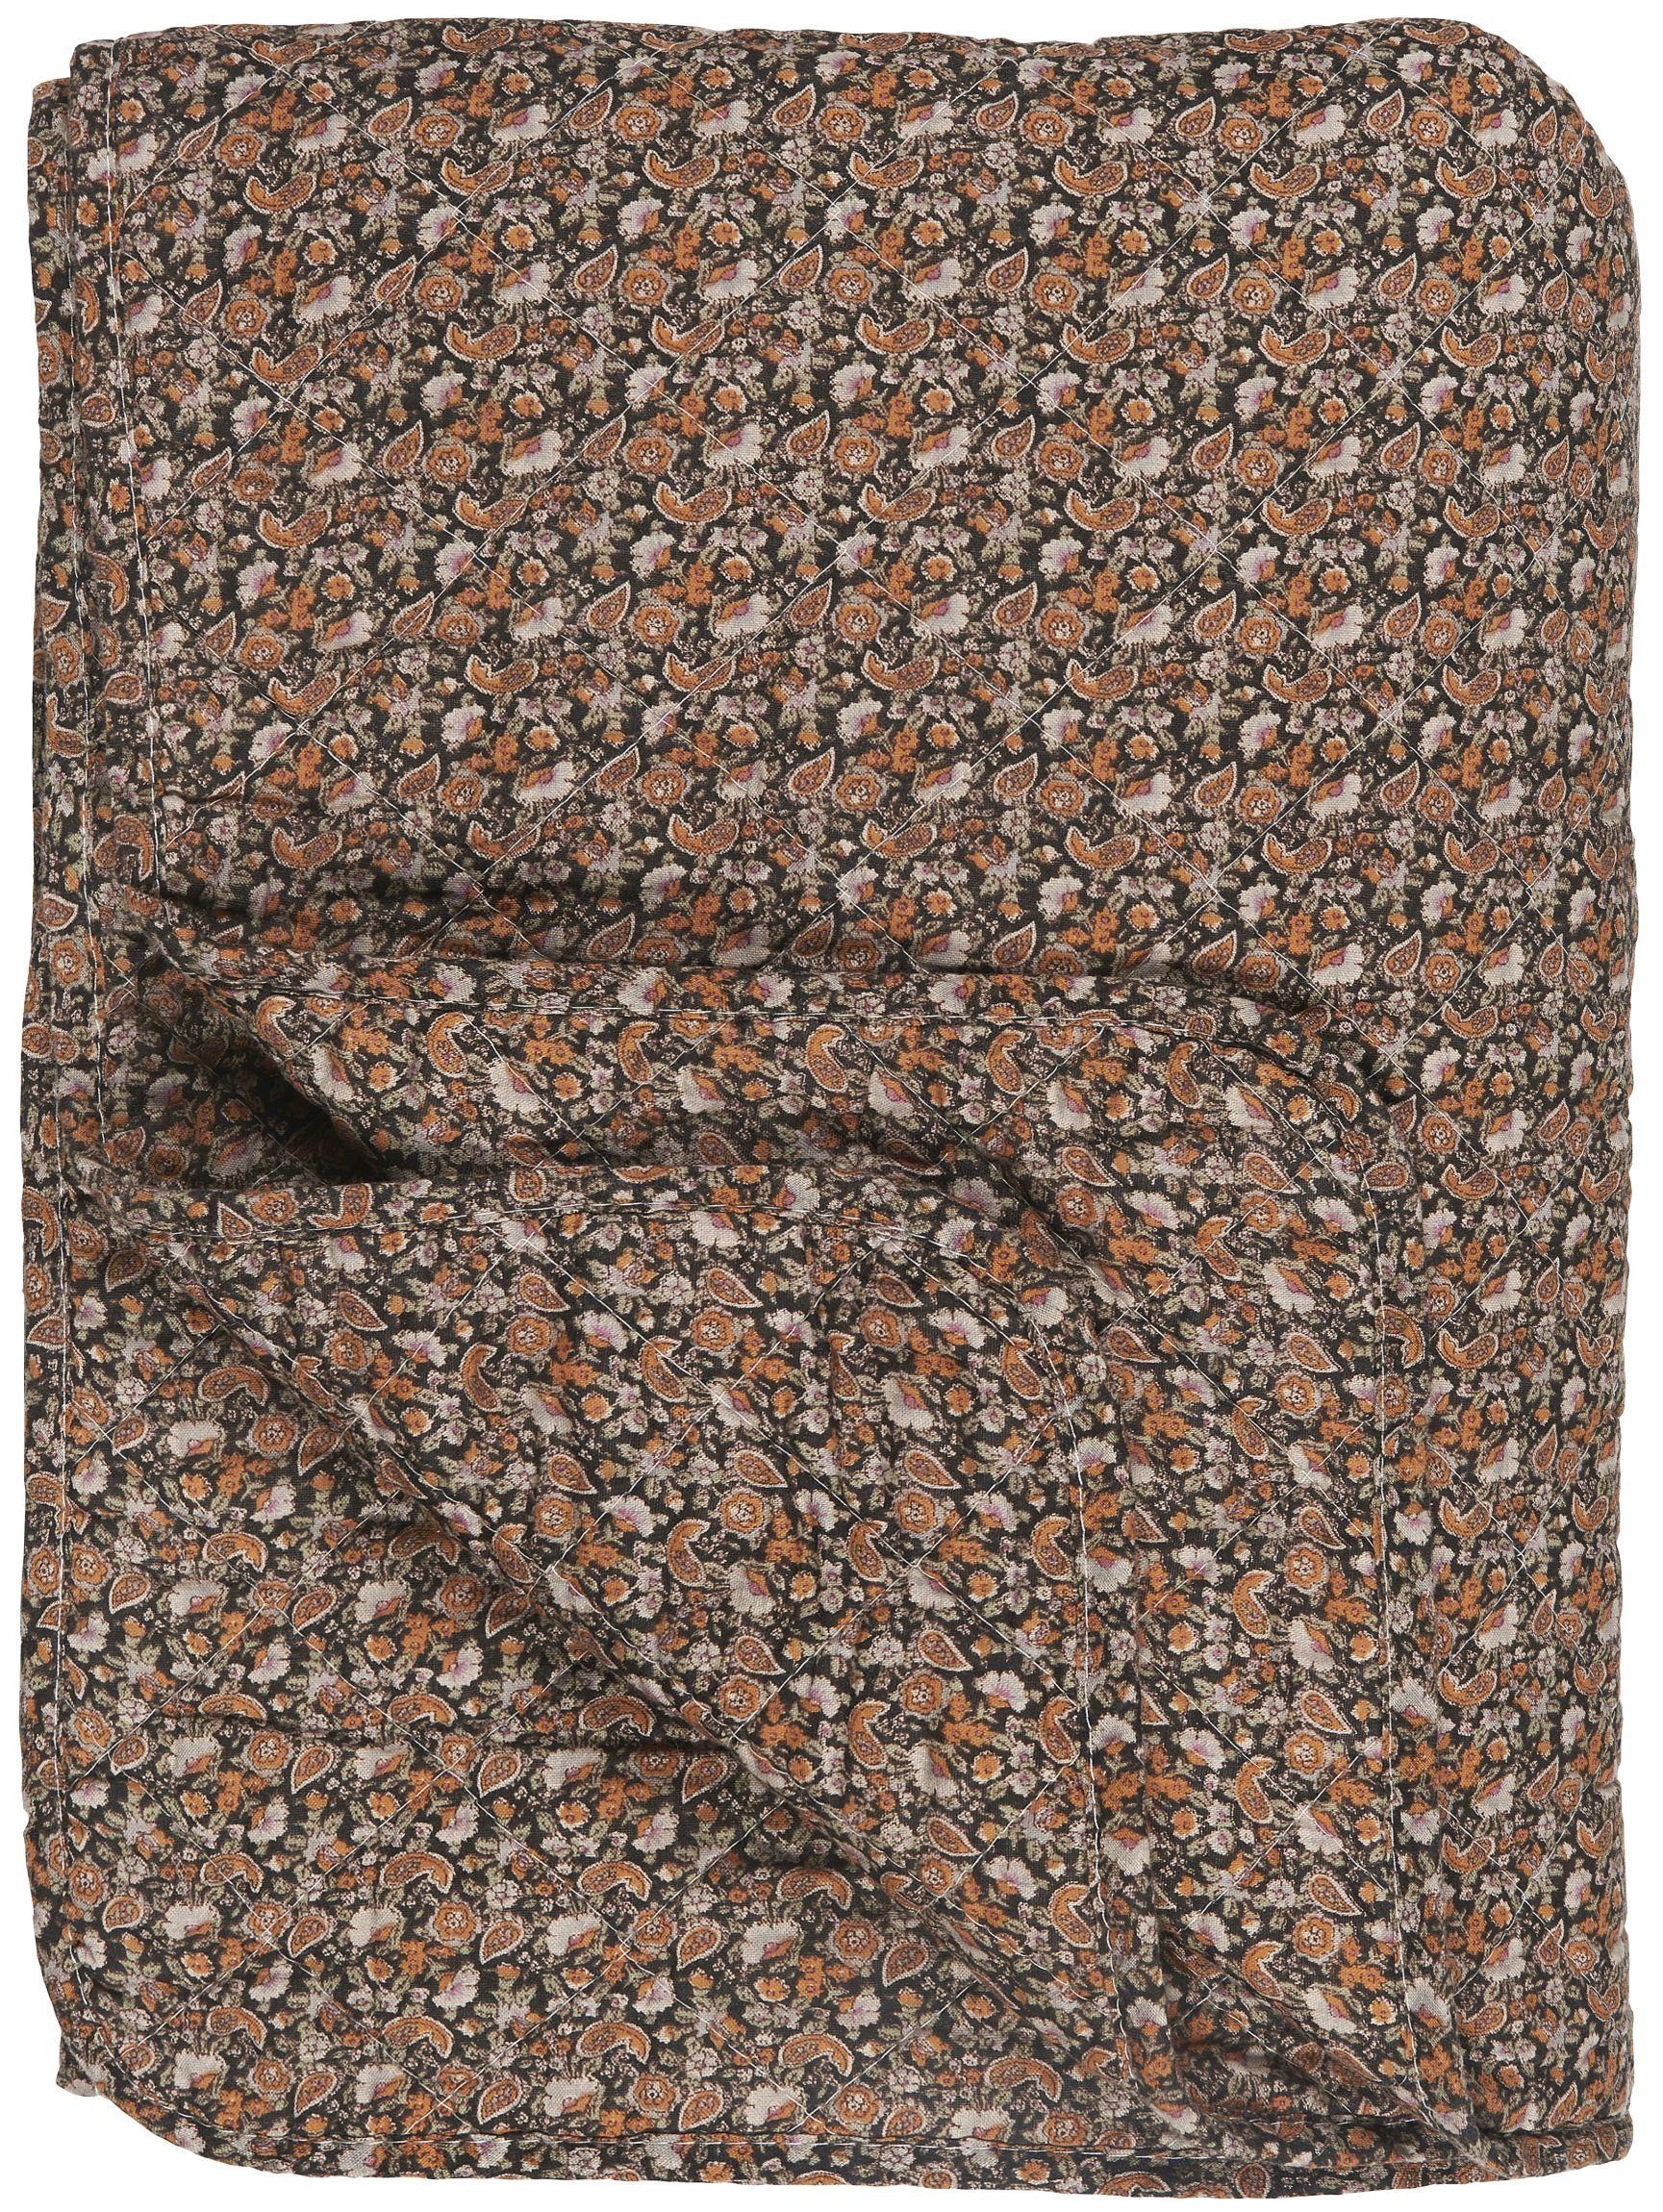 Wohndecke Decke Quilt Tagesdecke Überwurf Schwarz Muster Ib Laursen  07997-00, Ib Laursen